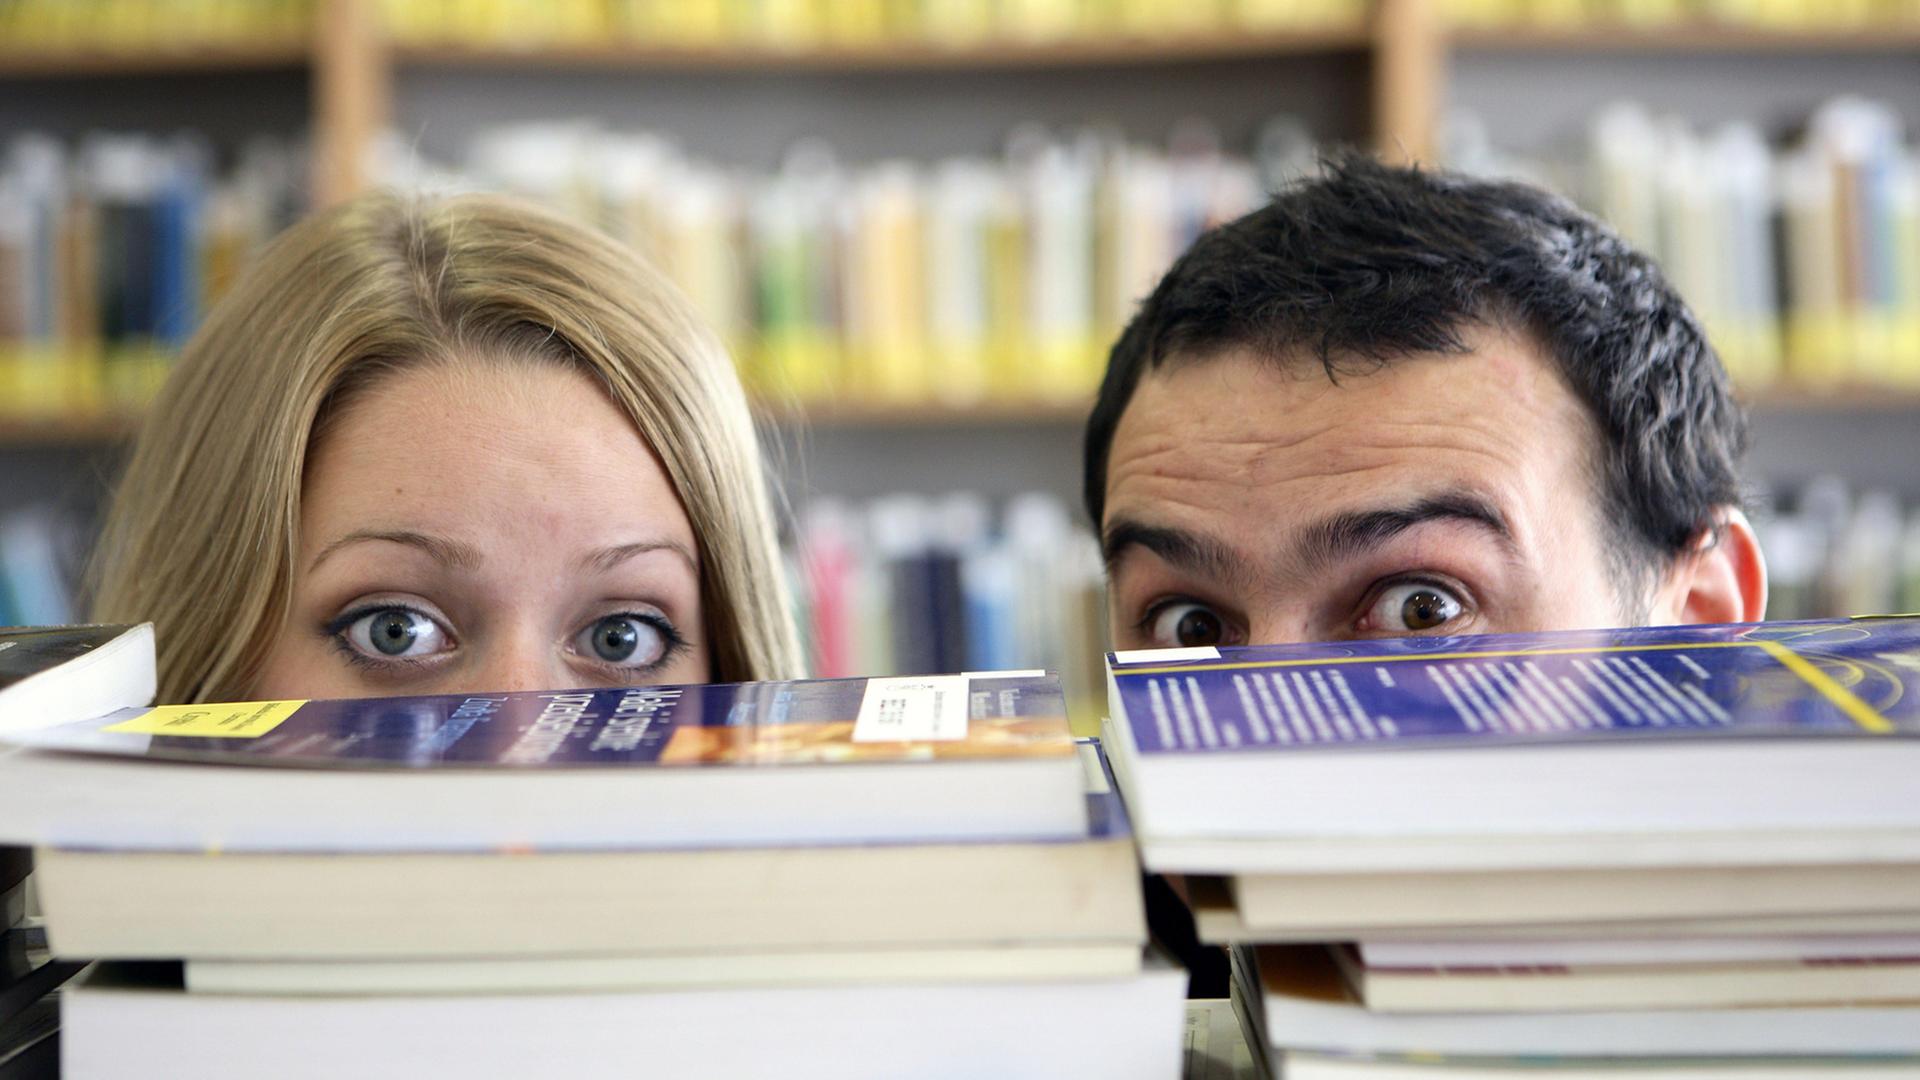 Ein Man und eine Frau verstecken sich hinter einem Stapel Bücher. Von den Gesichtern sind nur die großen offenen Augen und der Haaransatz zu sehen.